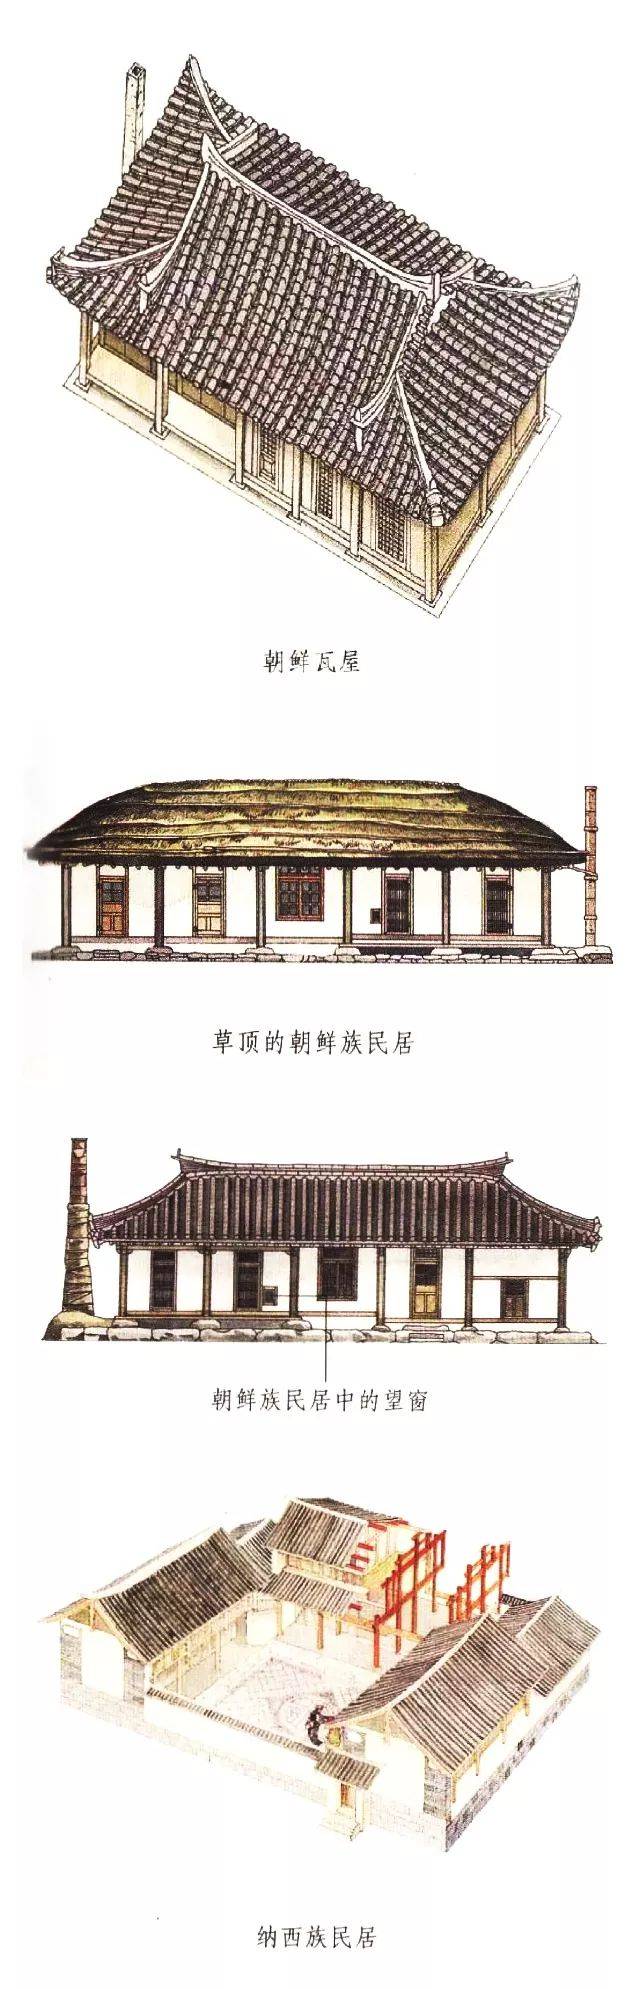 【绘画参考】45 种中国传统古民居手绘图(建筑参考)